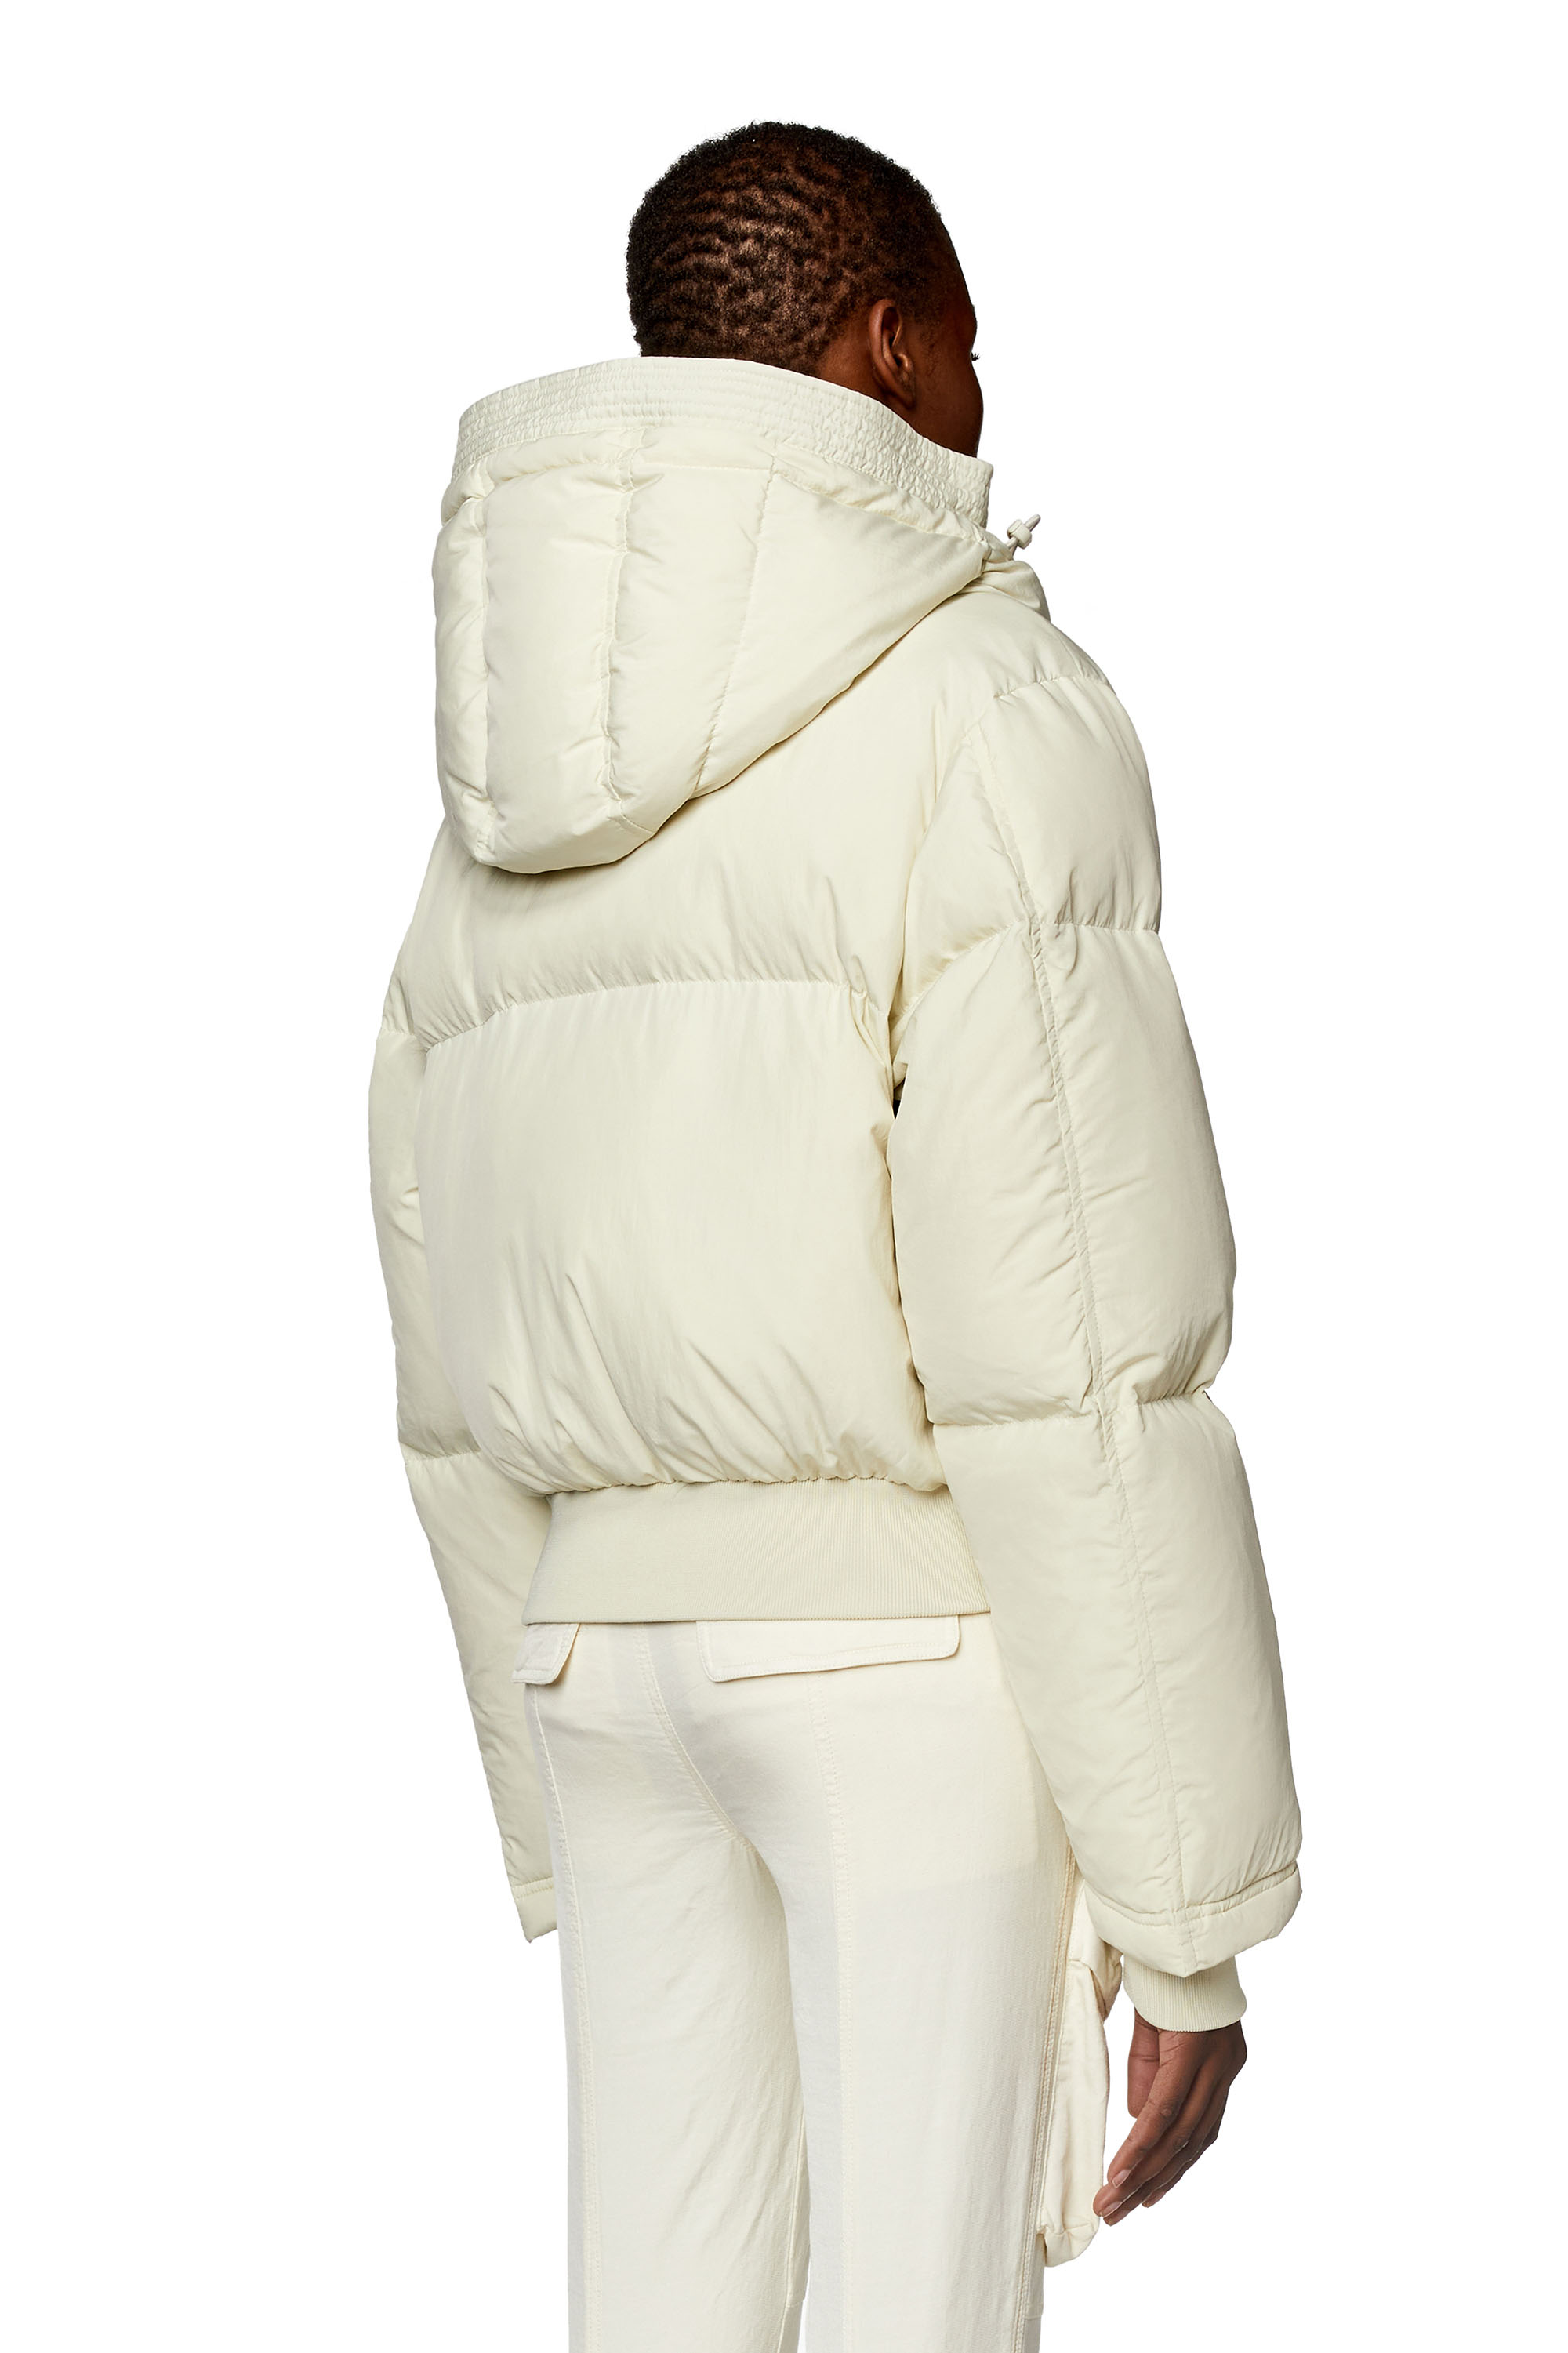 Women's Winter Jackets: Bomber Jackets, Down Jackets, Biker | Diesel®